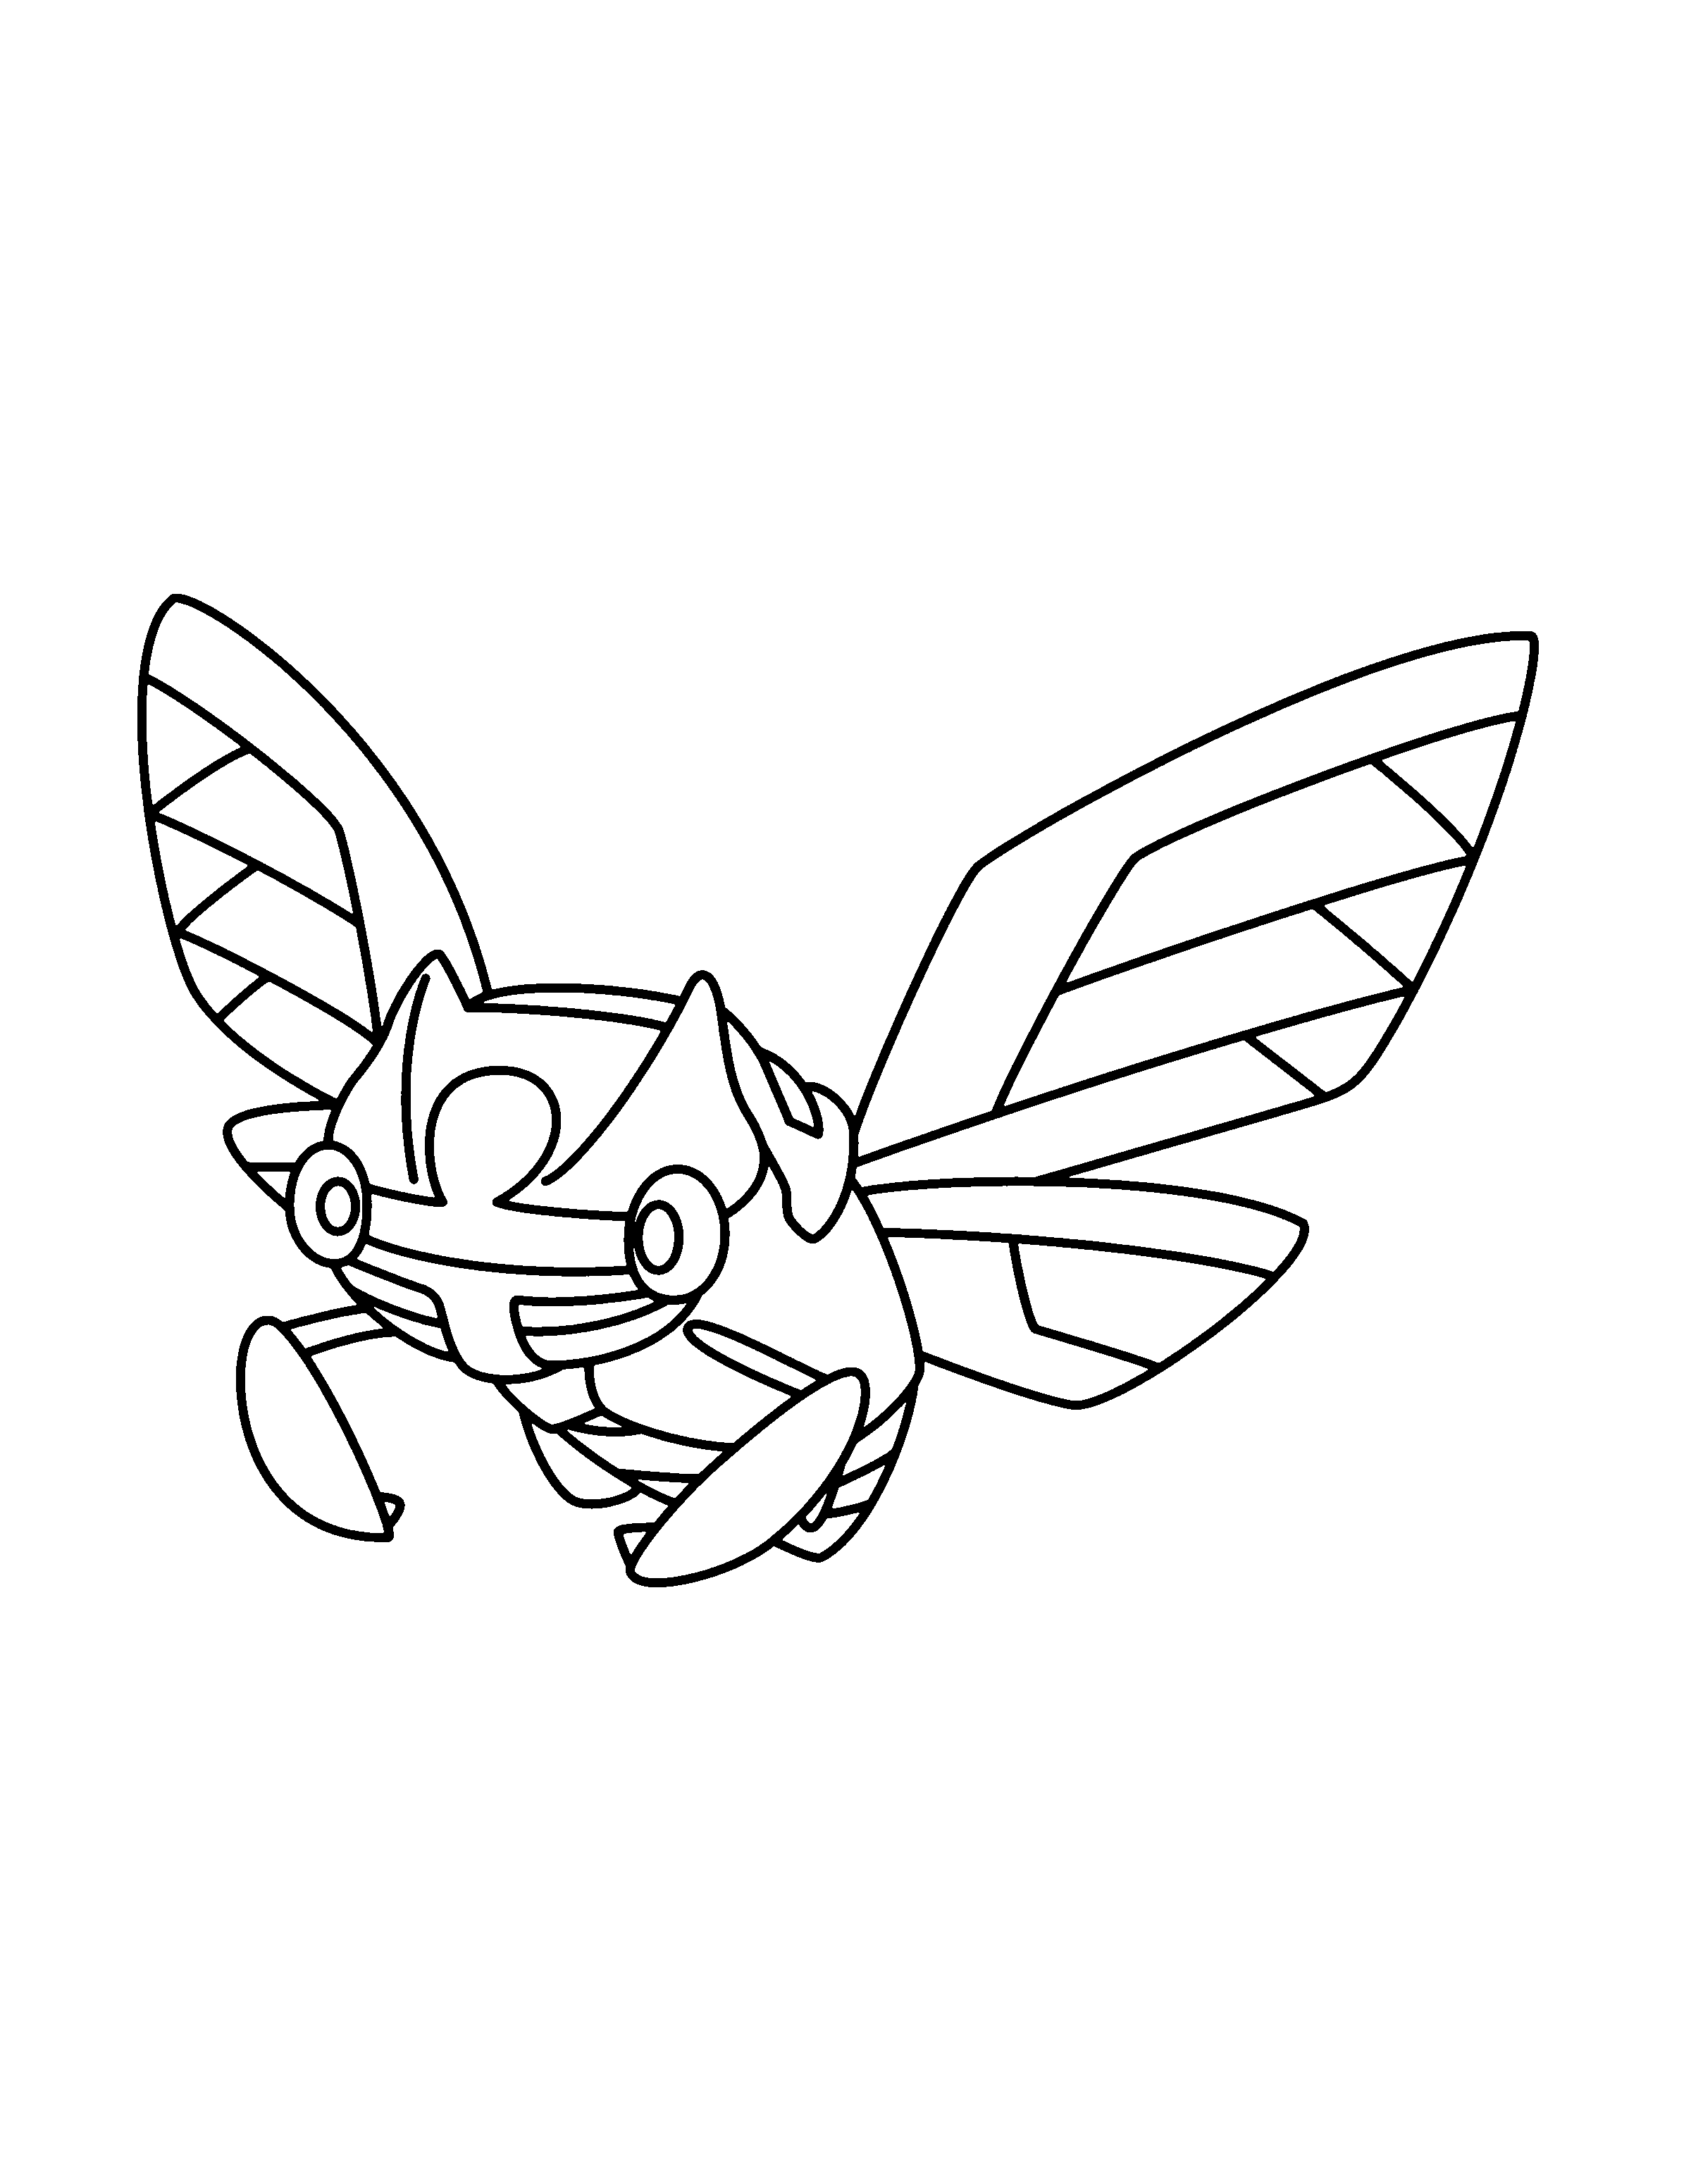 dibujo-para-colorear-pokemon-imagen-animada-0921